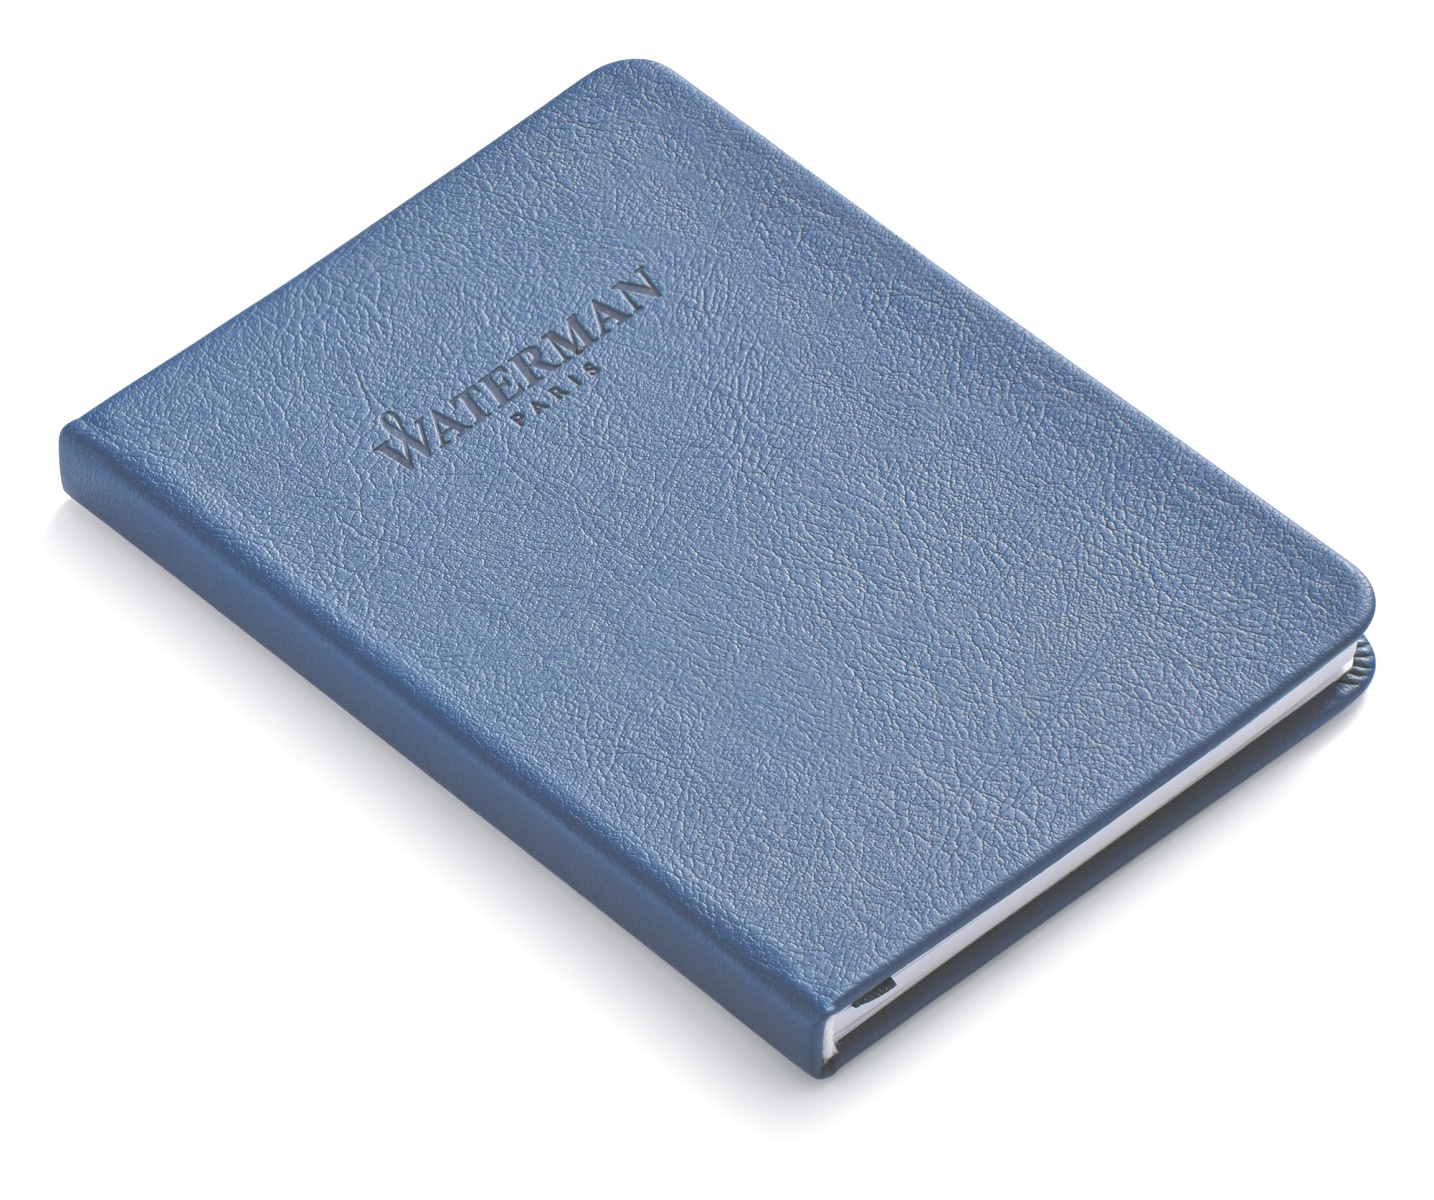 Набор: Ручка перьевая Waterman Hemisphere 2018, Bright Blue CT (Перо F) + Подарочная коробка Waterman с фирменной записной книжкой, фото 15